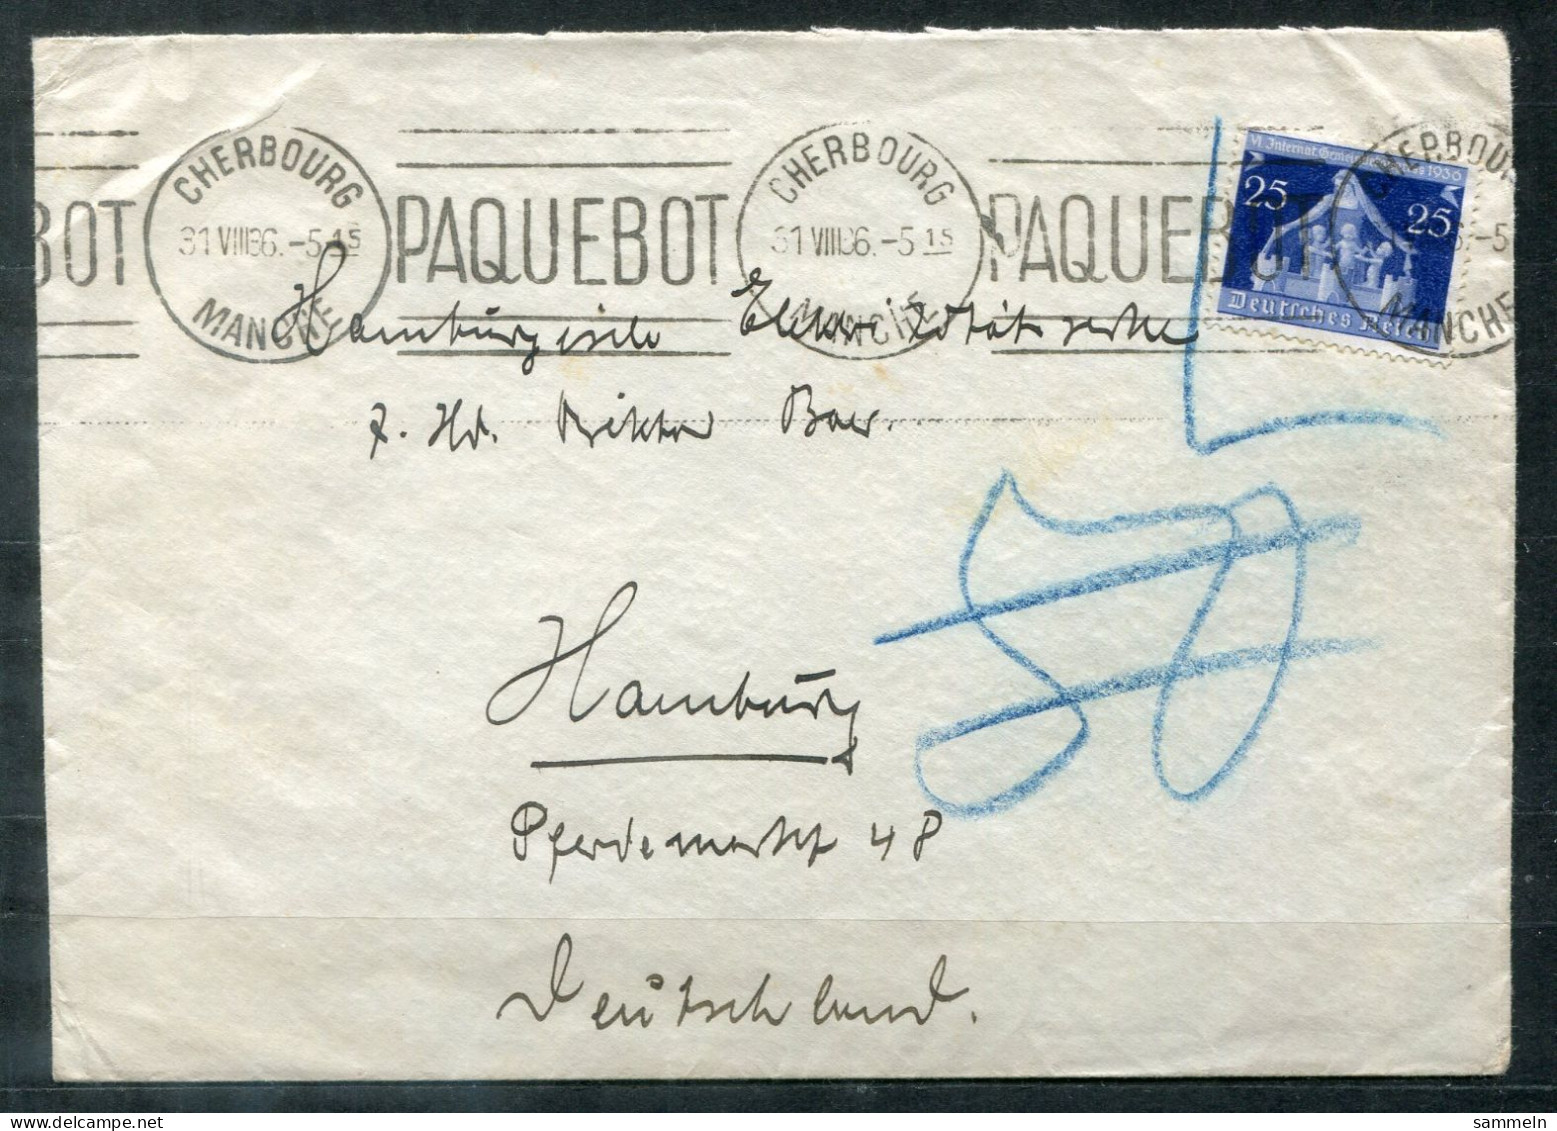 FRANKREICH - Schiffspost, Navire, Ship Letter, Maschinenstempel PAQUEBOT Und CHERBOURG 31.8.1936 Auf NDL-Umschlag - Covers & Documents